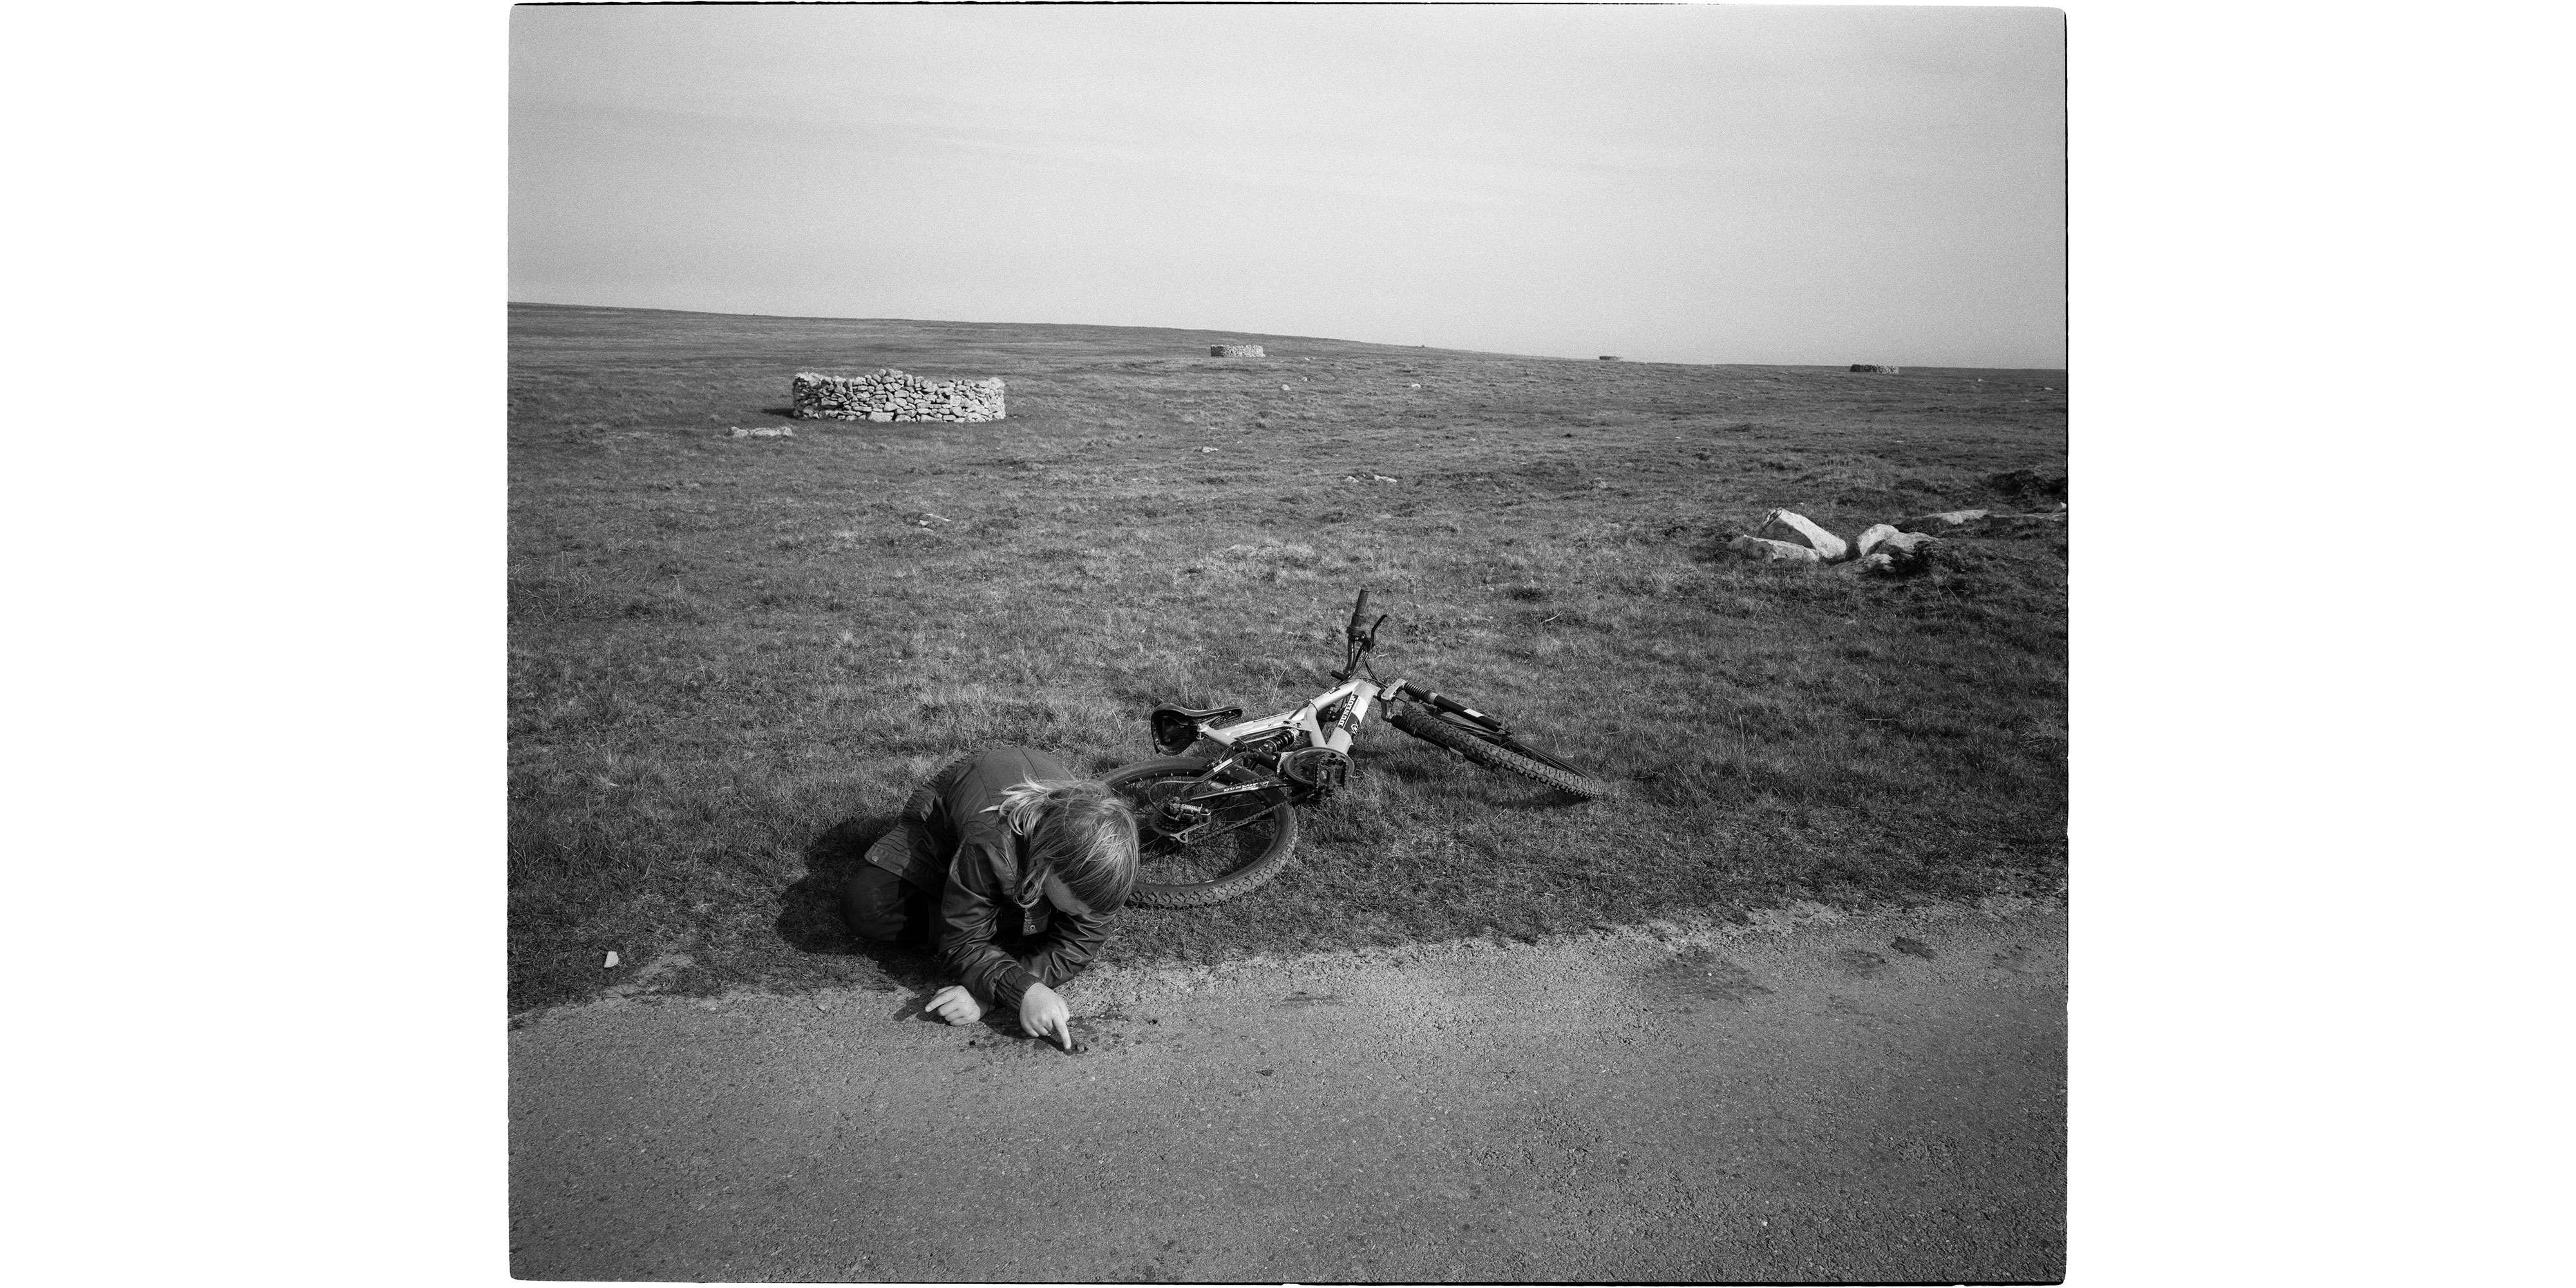 foula shetland landscape black and white photography